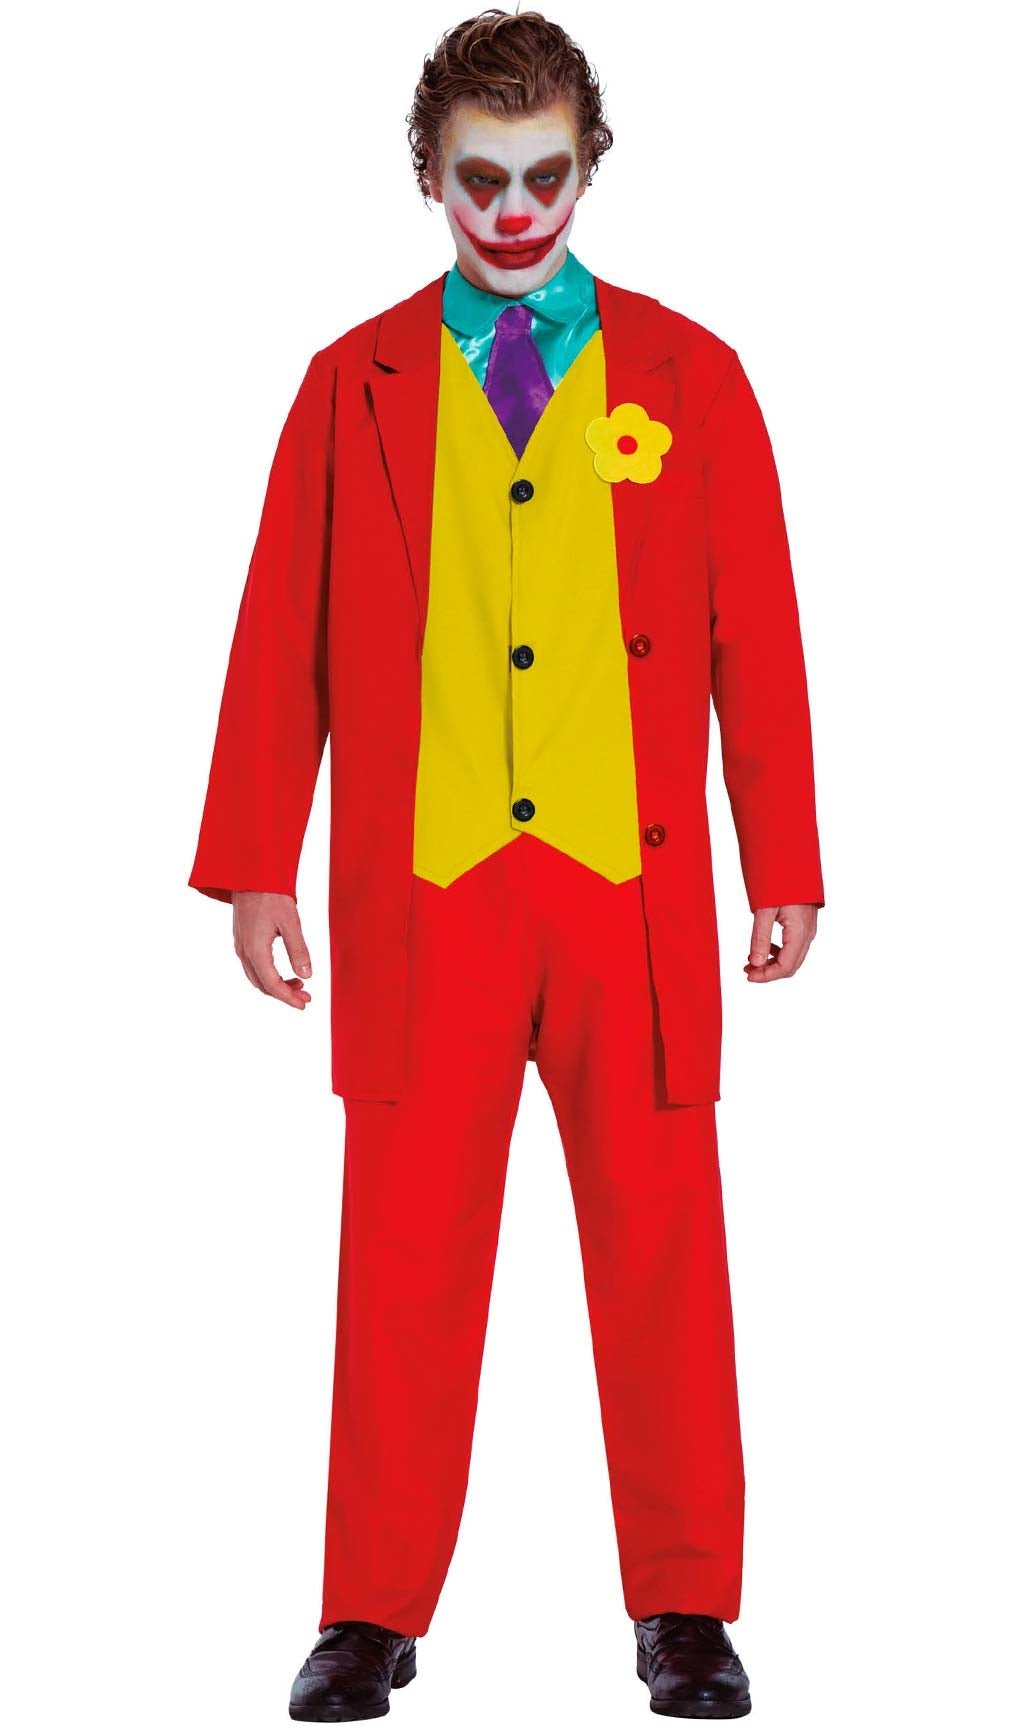 Costume da Joker il film abito rosso carnevale adulti vestito cosplay  completo